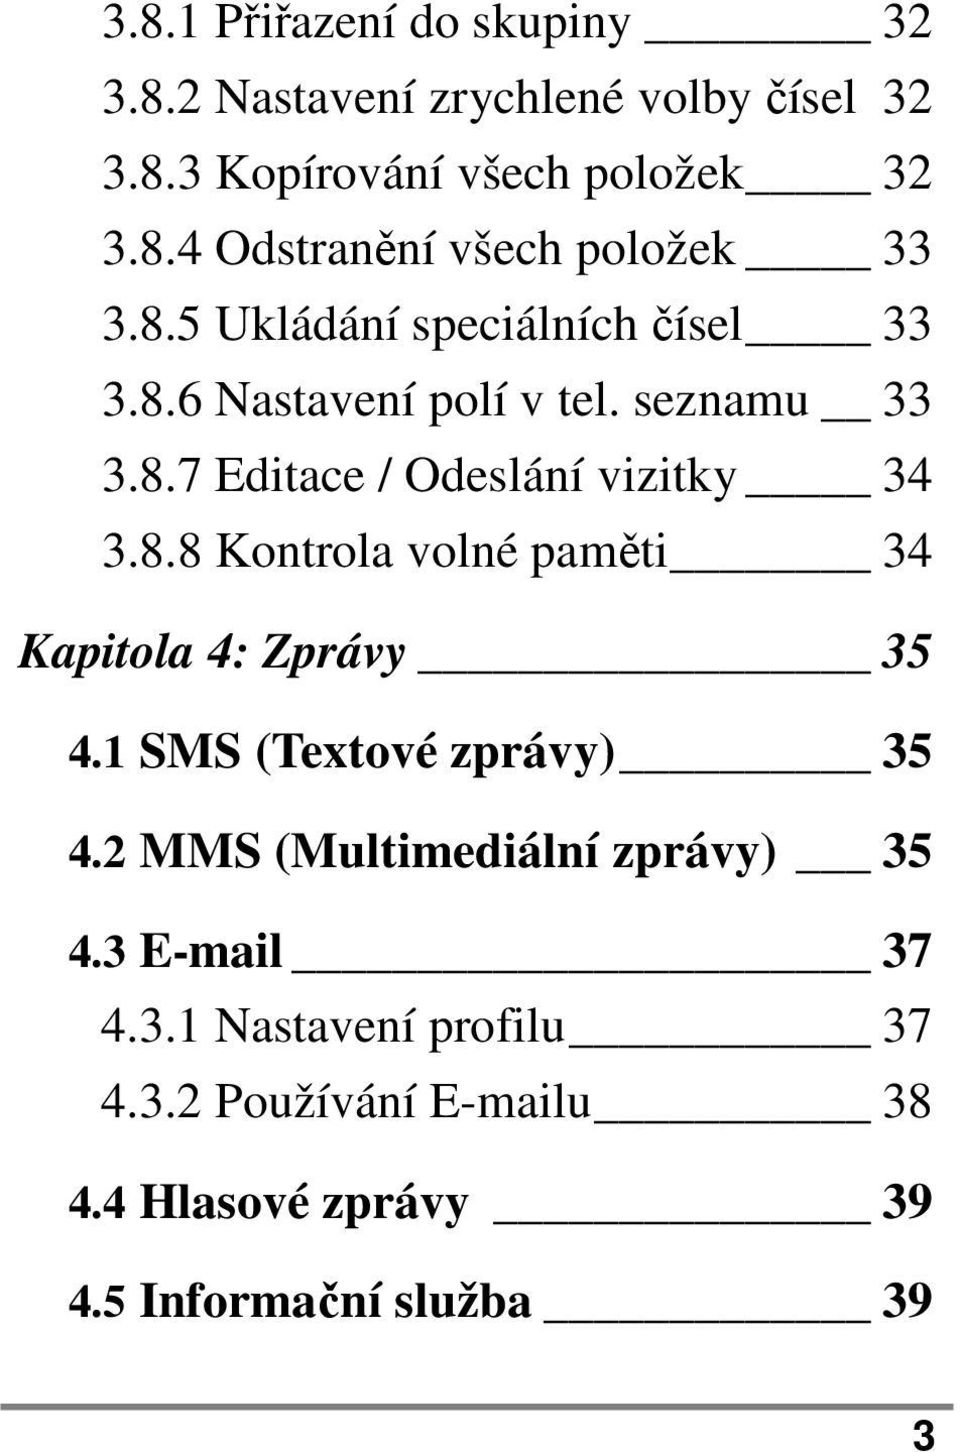 1 SMS (Textové zprávy) 35 4.2 MMS (Multimediální zprávy) 35 4.3 E-mail 37 4.3.1 Nastavení profilu 37 4.3.2 Používání E-mailu 38 4.